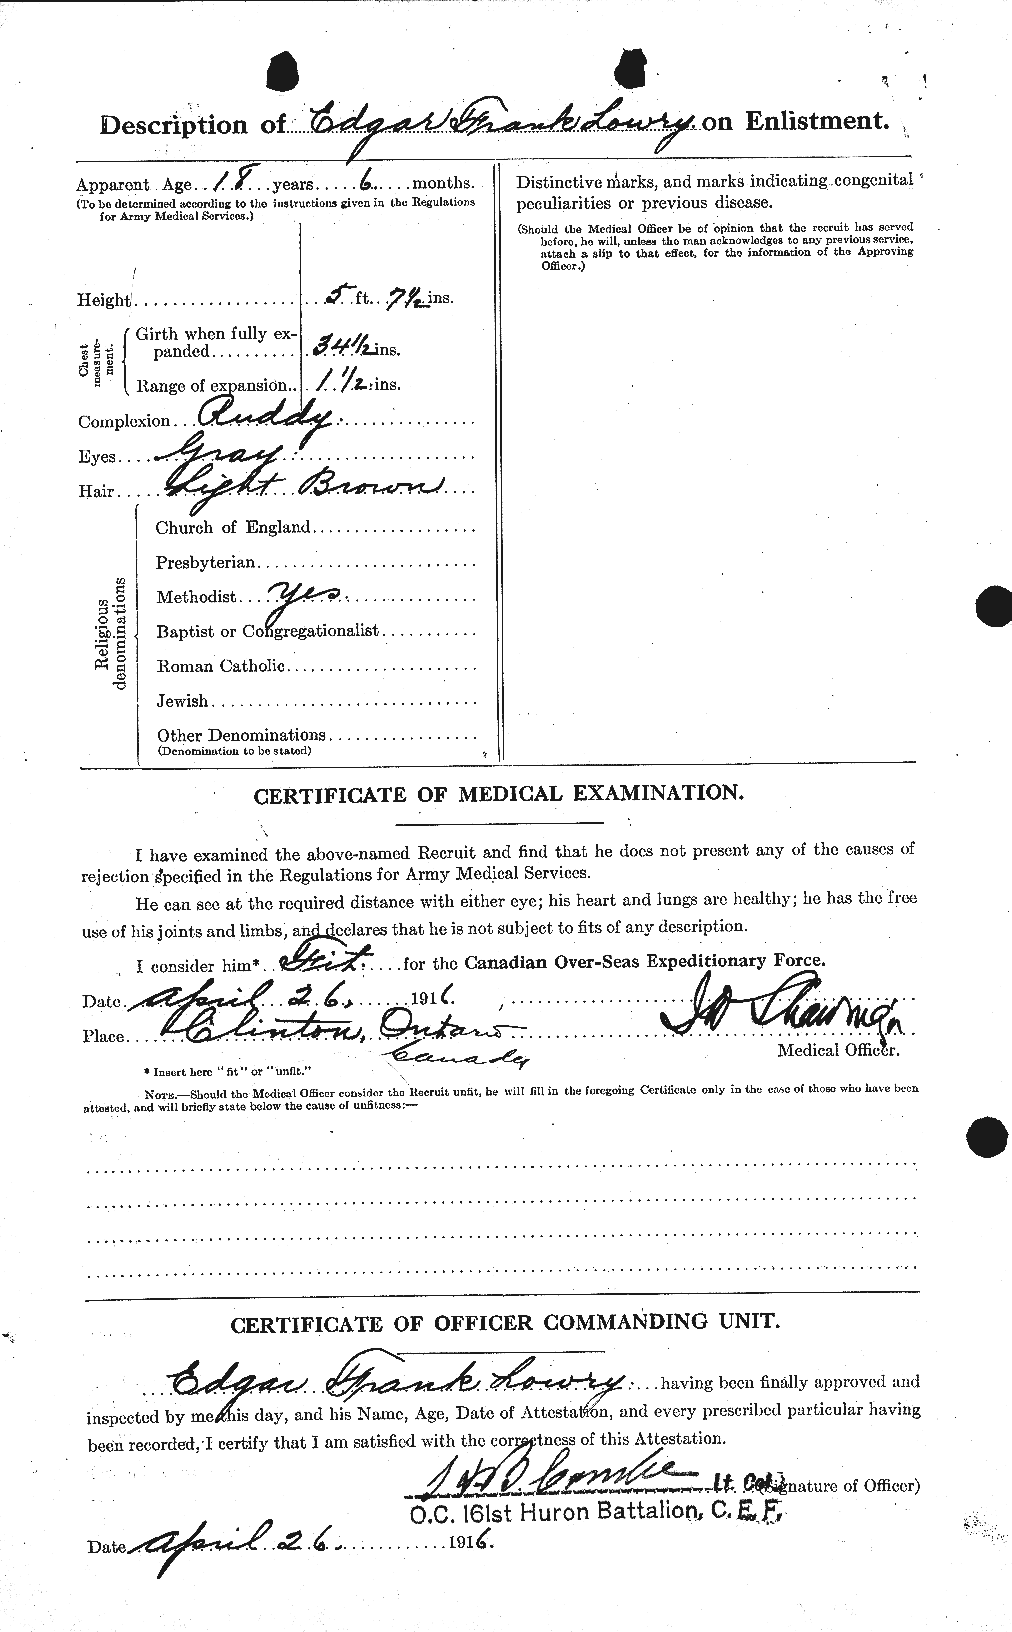 Dossiers du Personnel de la Première Guerre mondiale - CEC 473974b